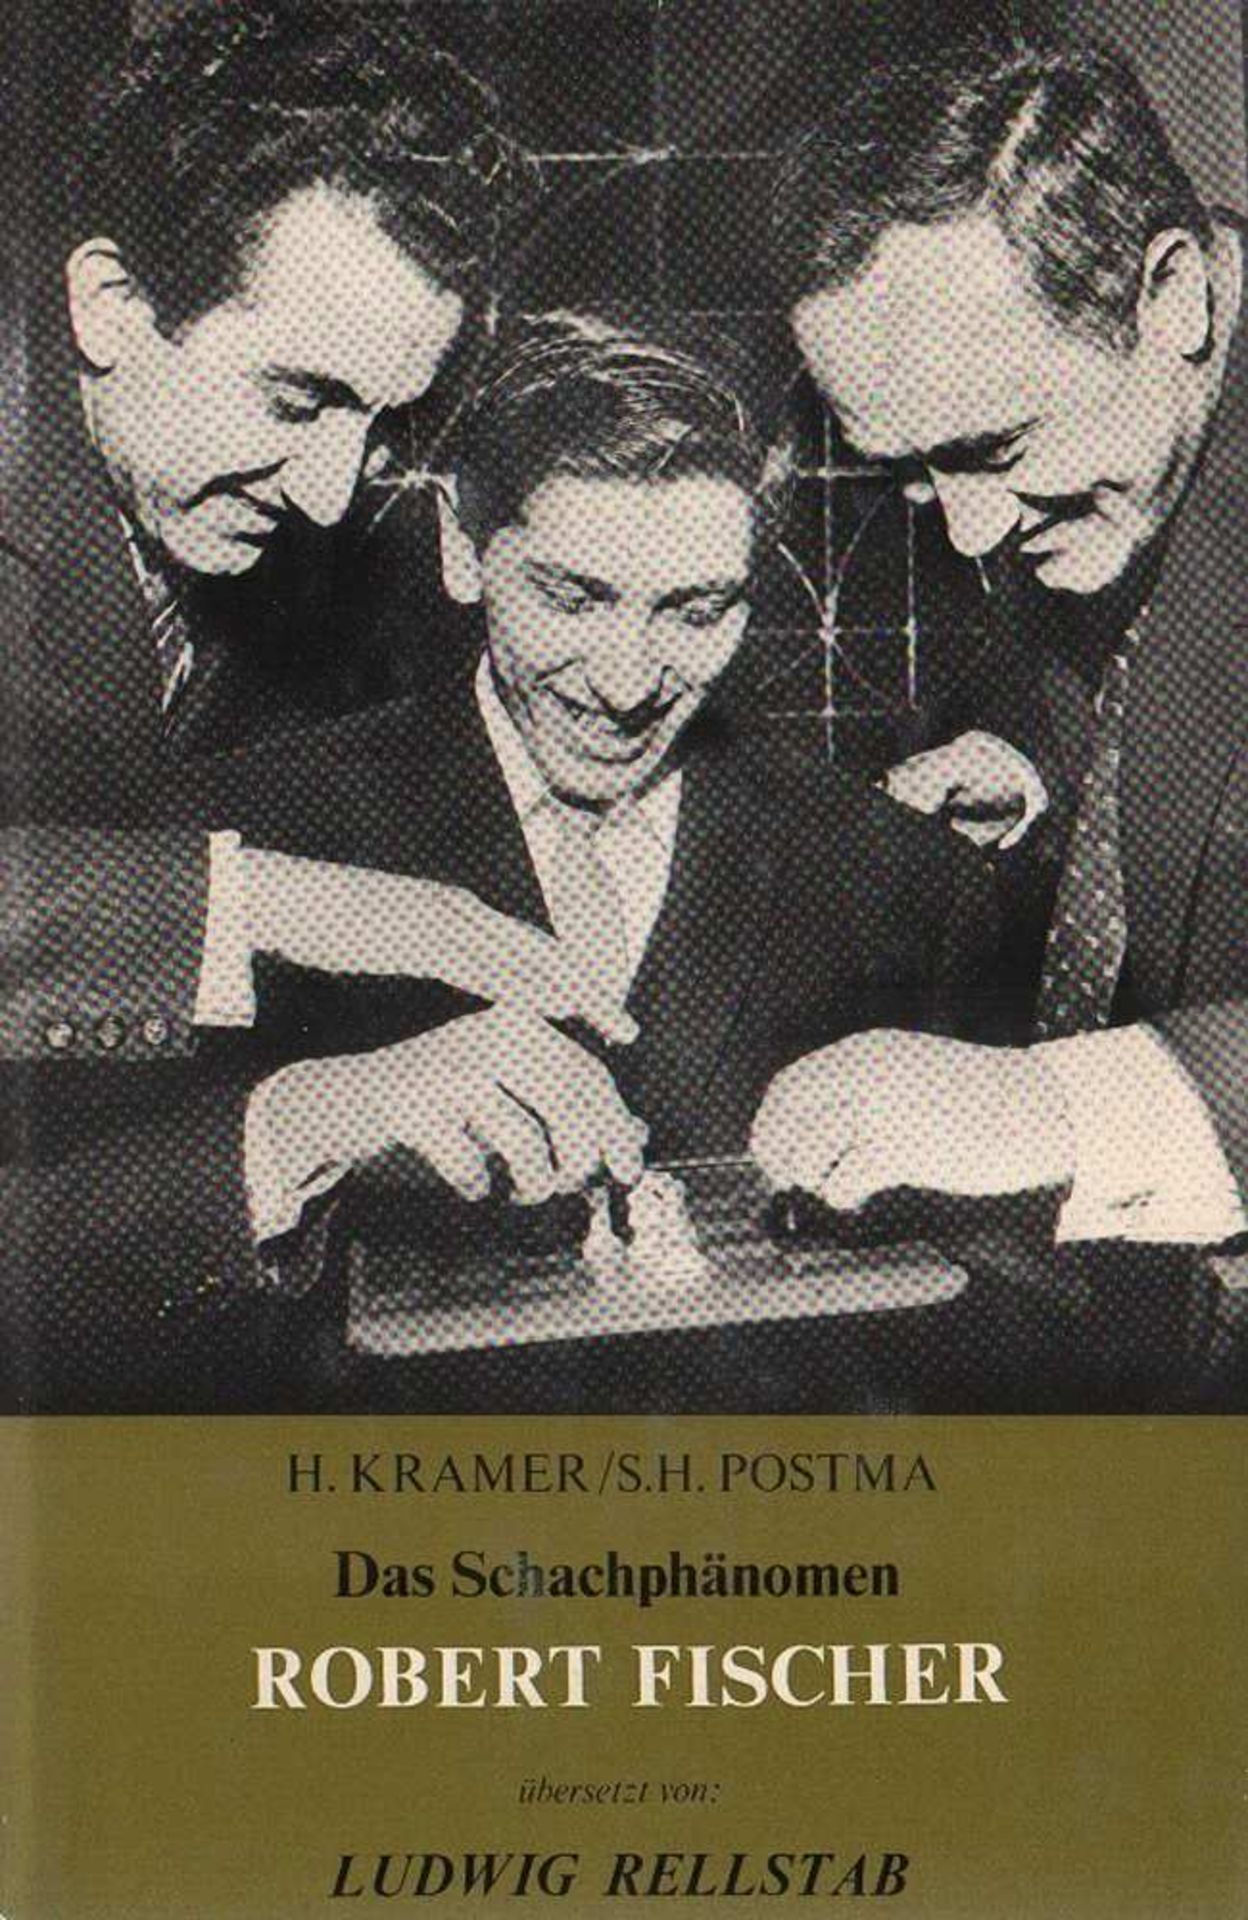 Fischer. Kramer, H. und S. H. Postma. Das Schachphänomen Robert Fischer. Übersetzt von Ludwig